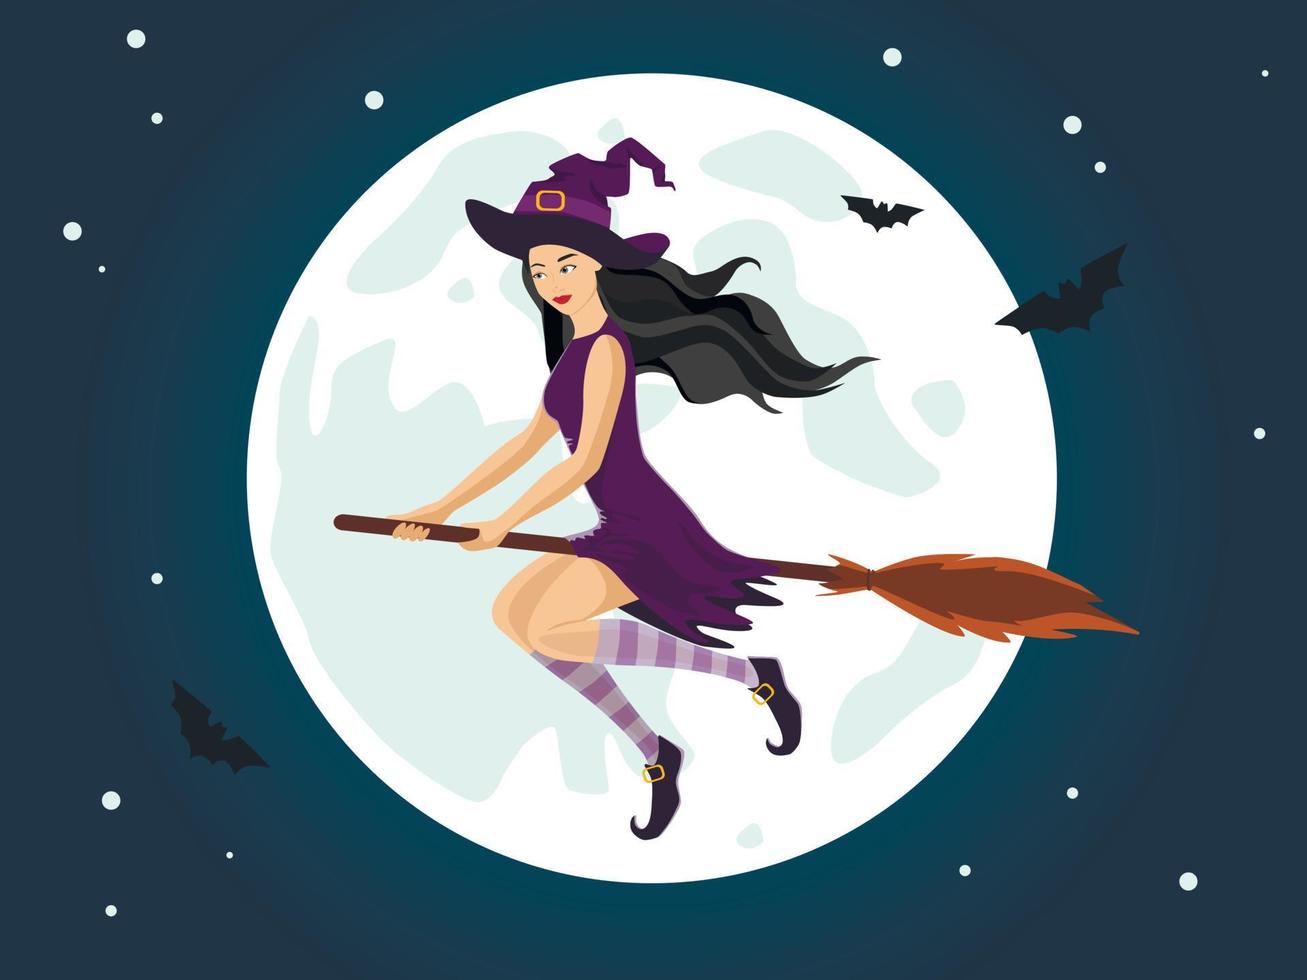 bruja vuela en una escoba en el cielo nocturno con luna llena. chica disfrazada de halloween con sombrero de bruja. vector